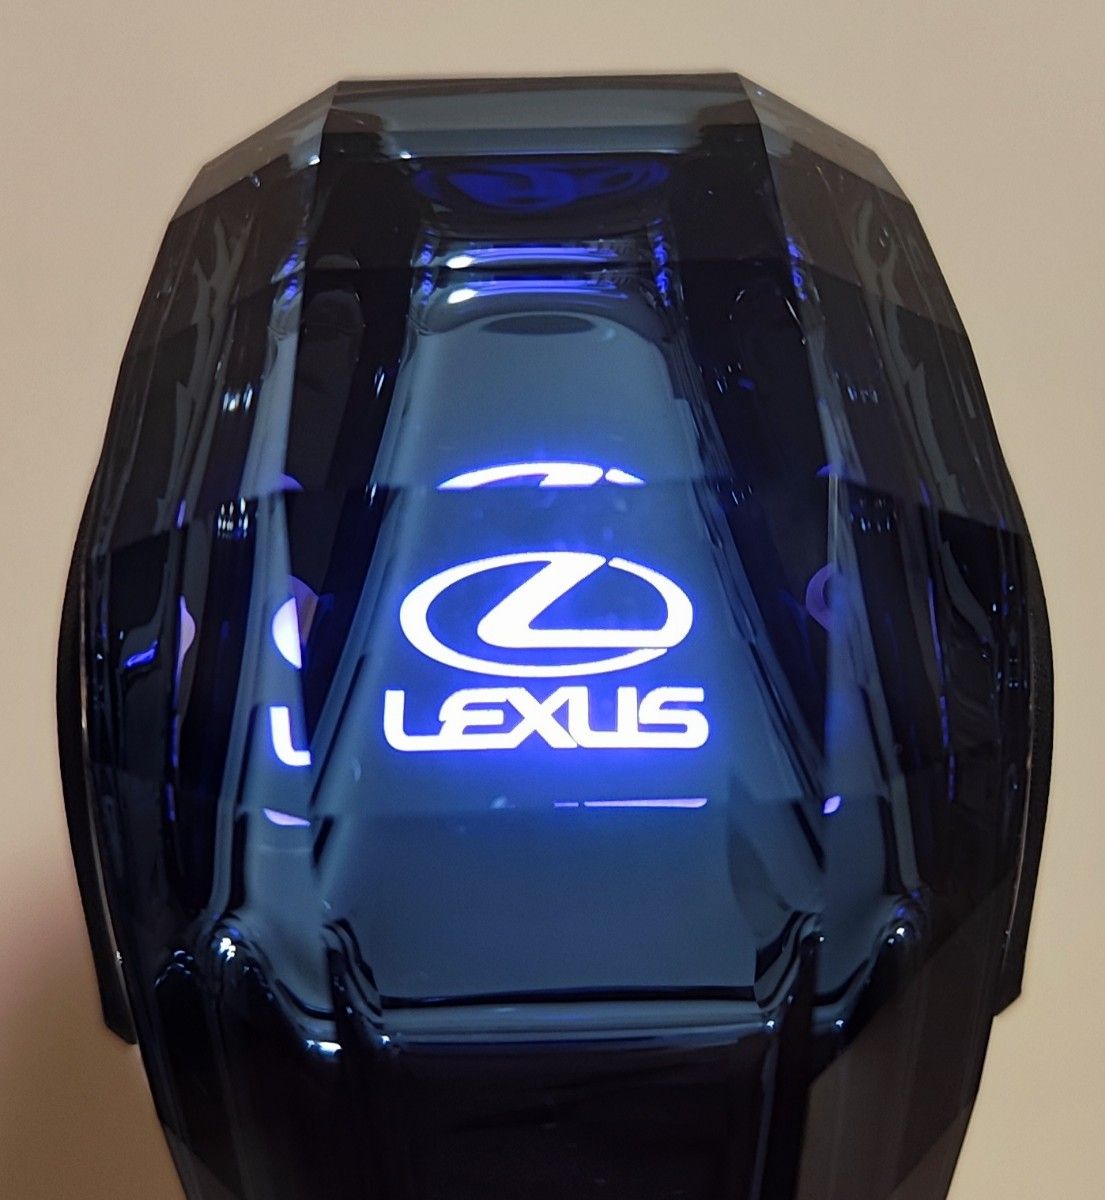 レクサス Lexus シフトノブ シフトレバー イルミネーション 7色LED点灯 ハンドボールクリスタルシフト